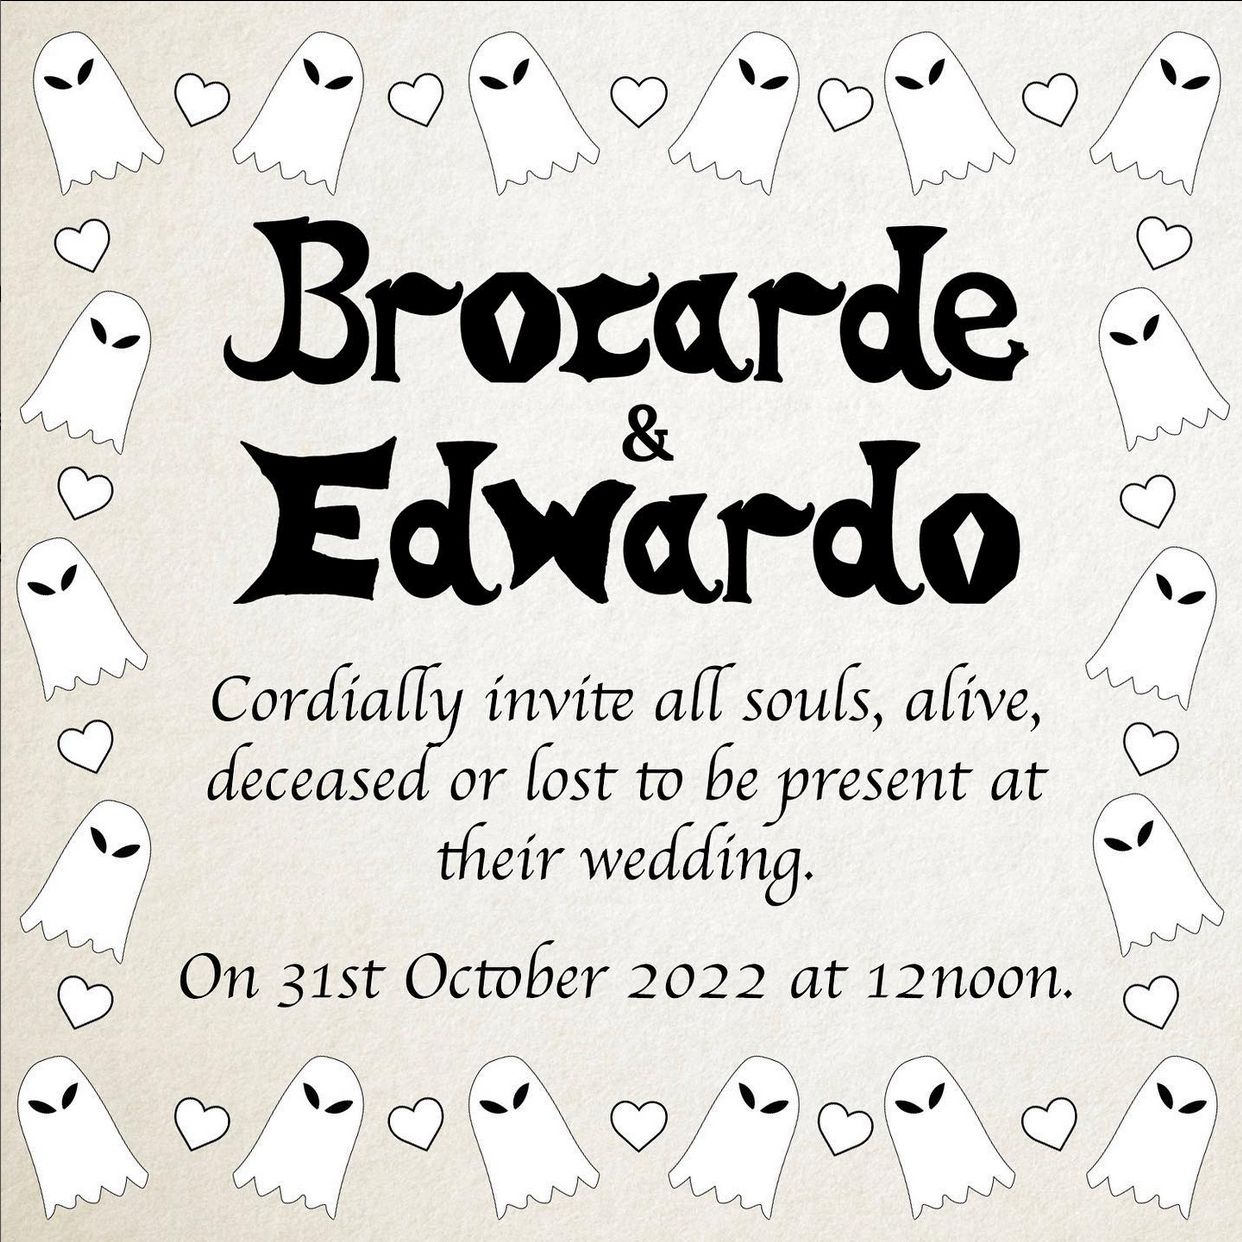 Brocardo mengaku menikah dengan hantu bernama Edwardo.